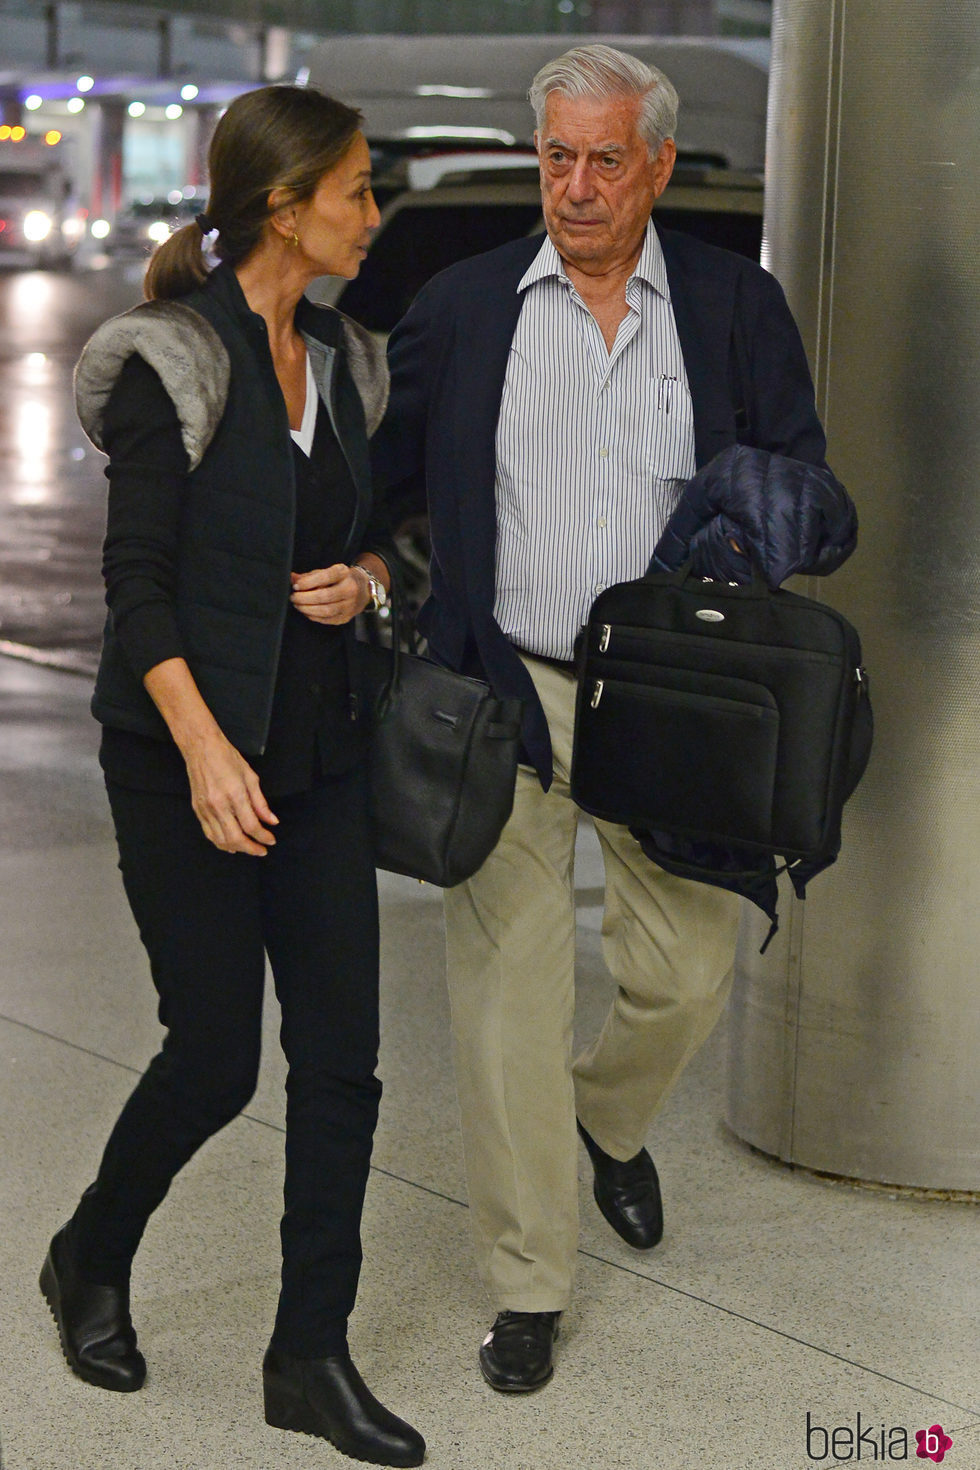 Isabel Preysler y Mario Vargas Llosa charlando en el aeropuerto de Miami tras conocer a los hijos de Enrique Iglesias